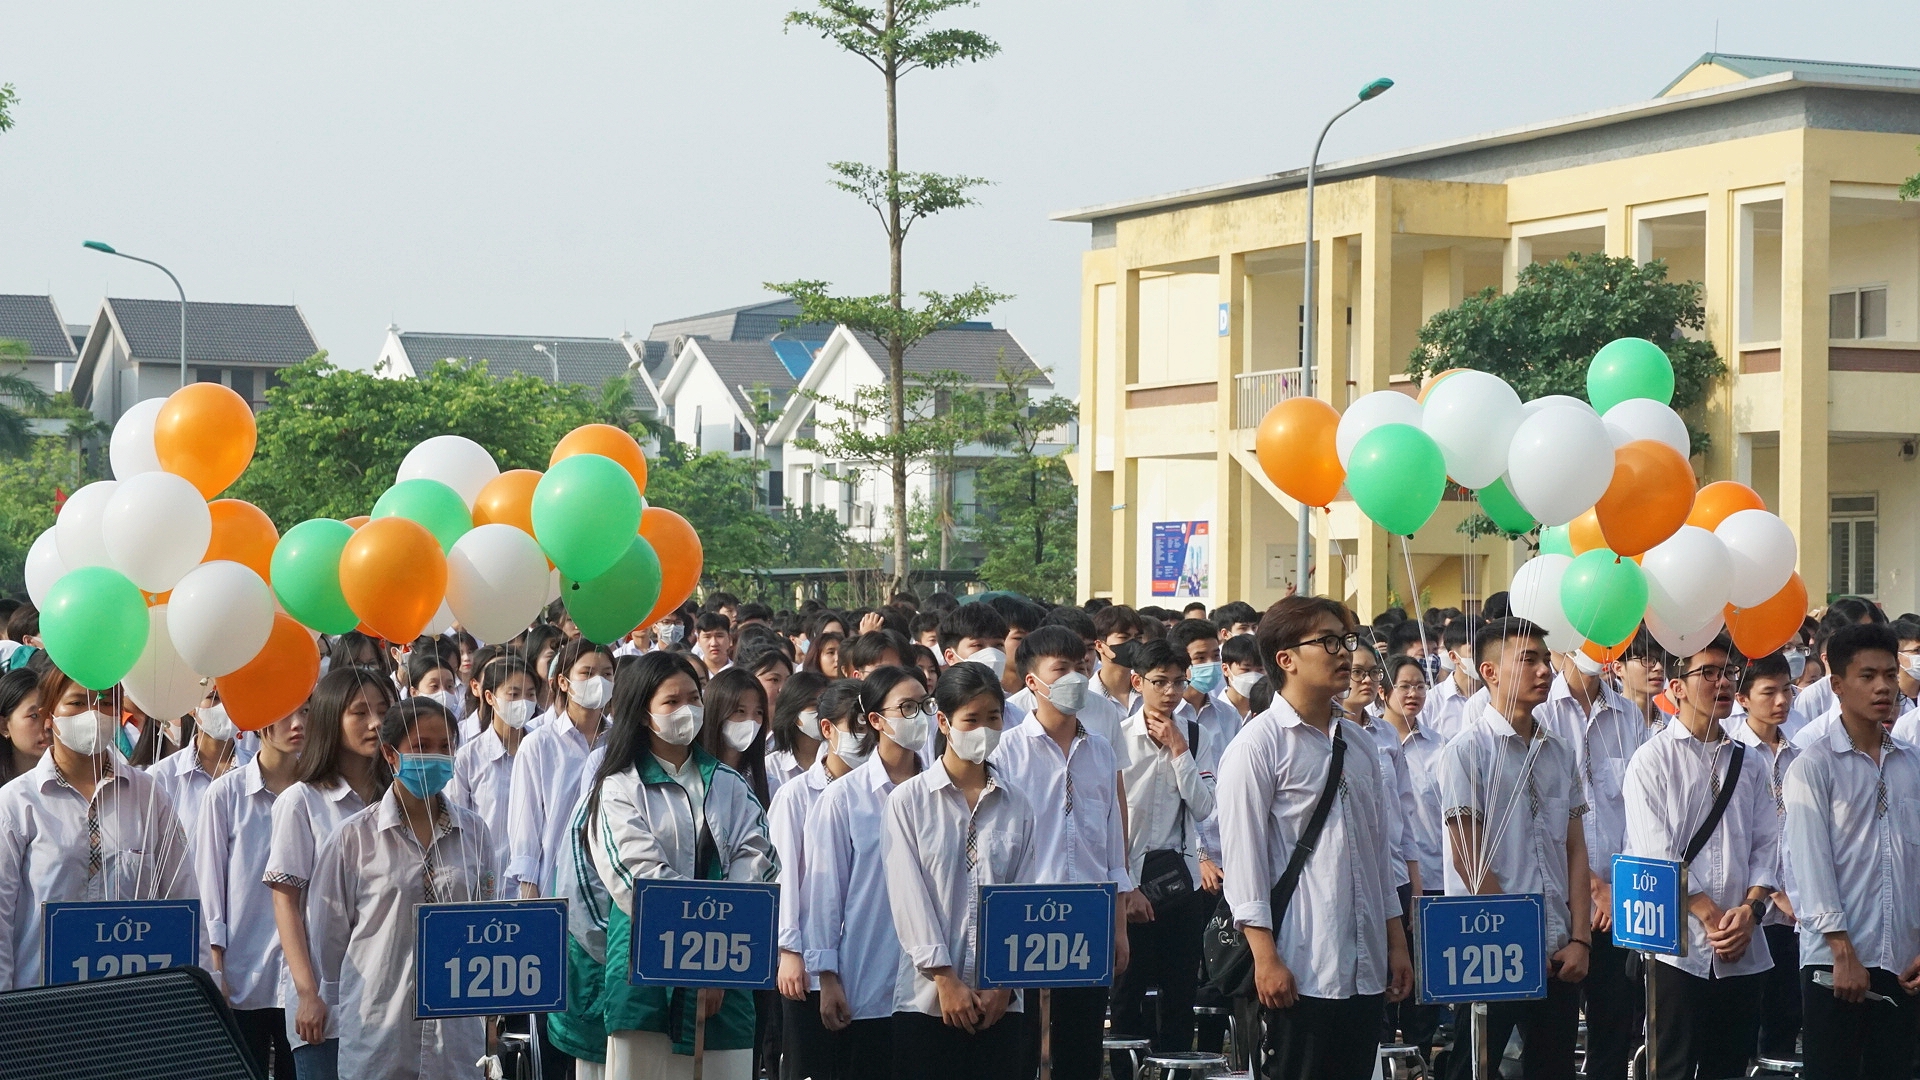 Xôn xao nữ sinh lớp 10 Hà Nội mặc quần jean đến trường bị cắt rách vì sai quy định: Hiệu trưởng nói gì?- Ảnh 1.